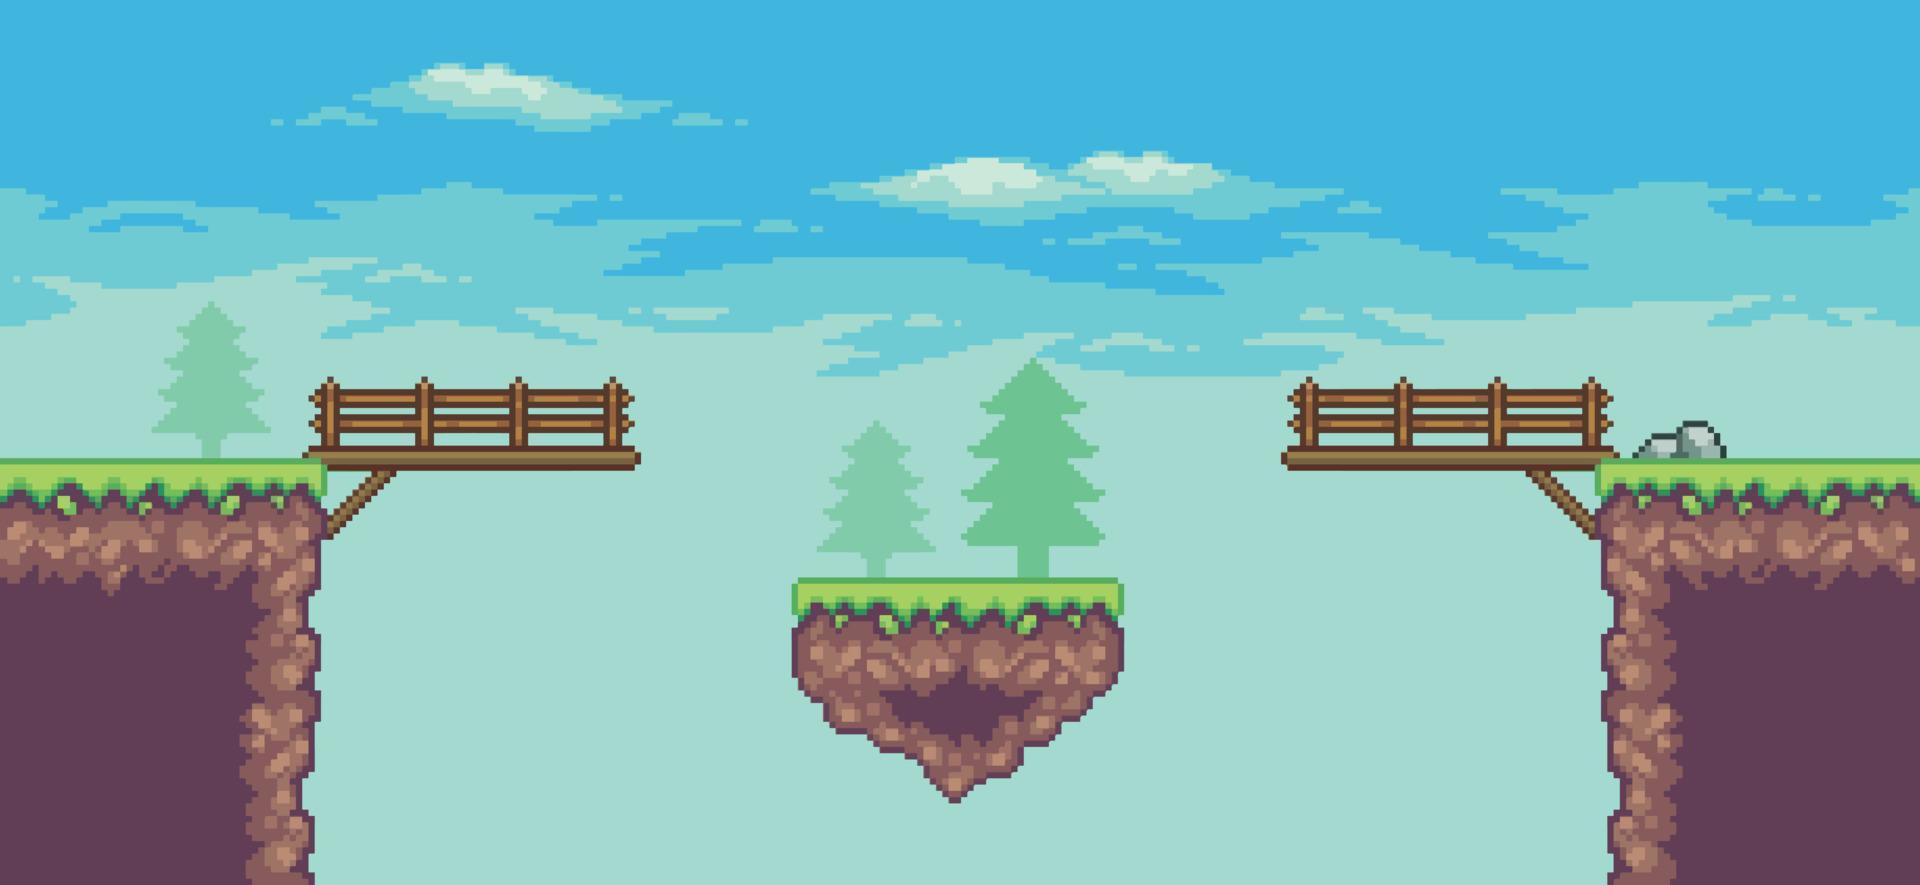 scène de jeu d'arcade pixel art avec plate-forme flottante, pont, arbres, nuages fond 8bit vecteur